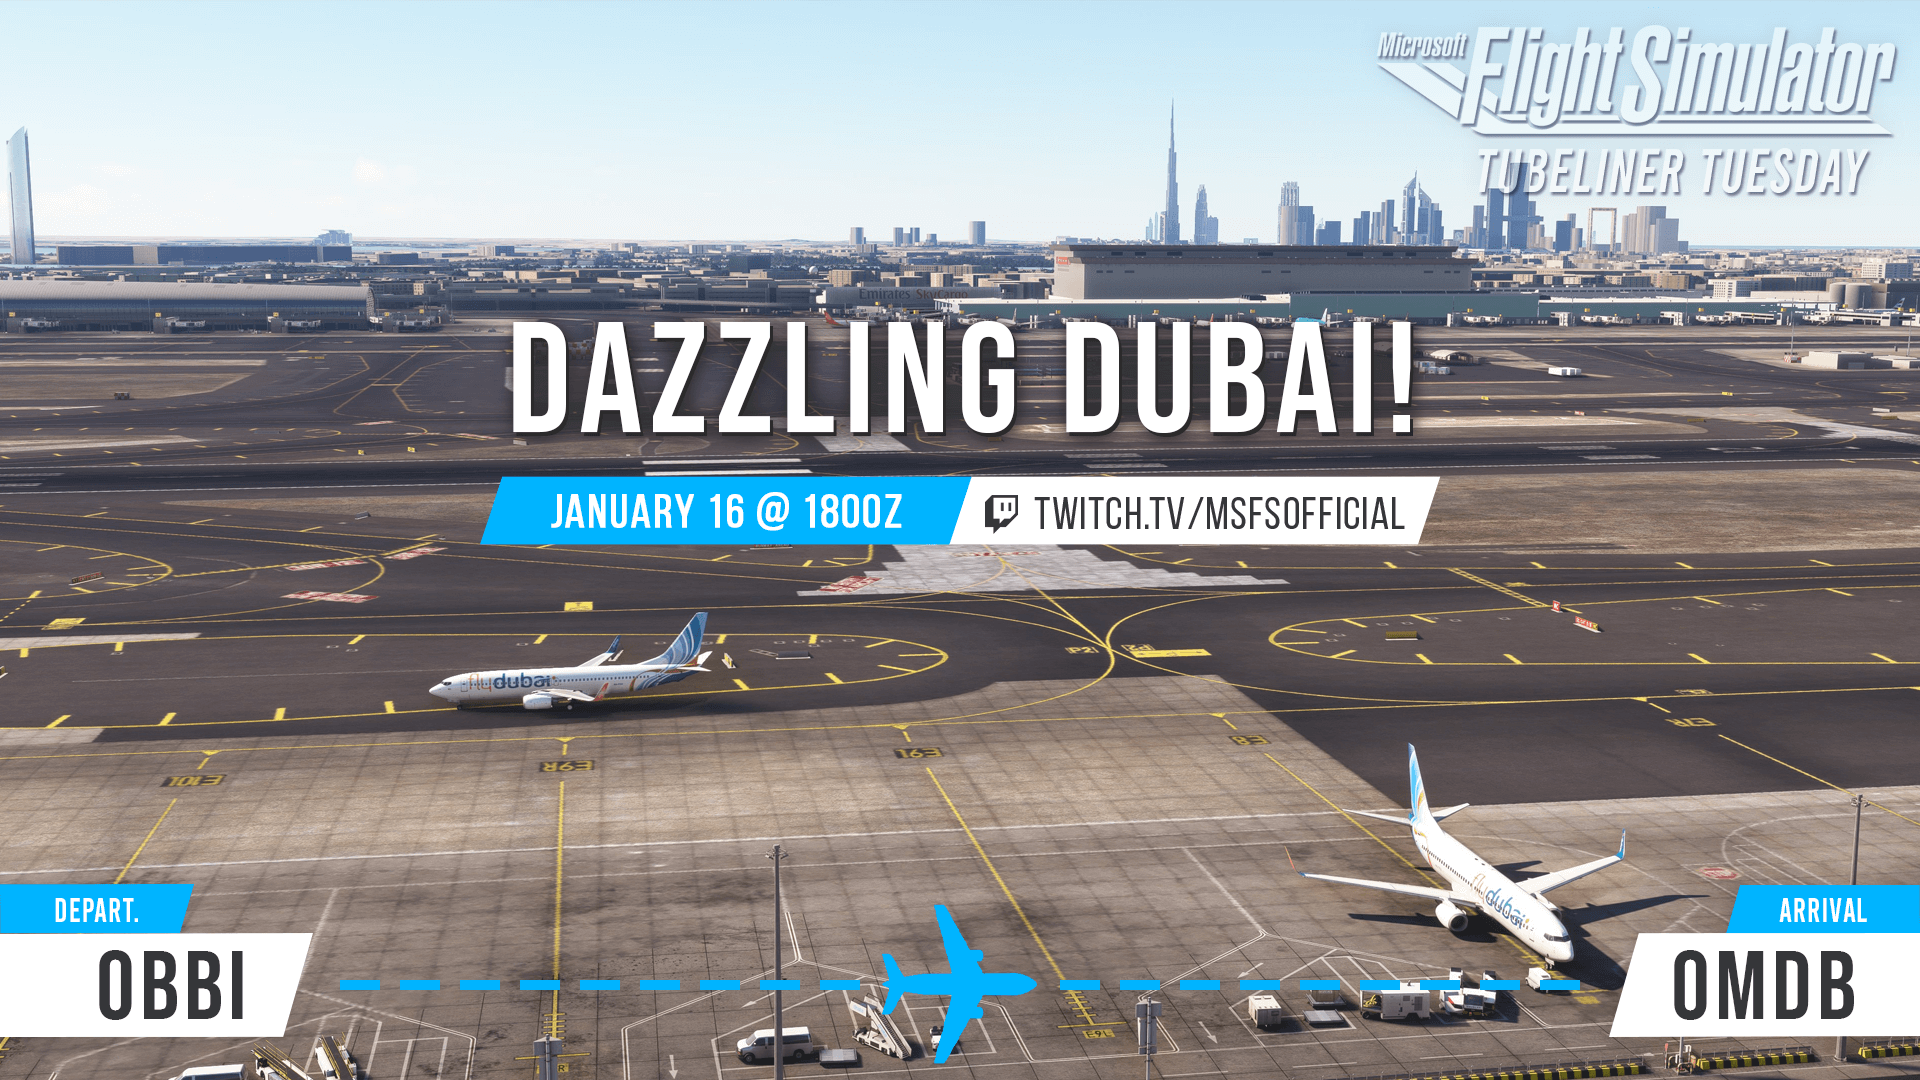 Tubeliner Tuesday - Dazzling Dubai - January 16, 2024